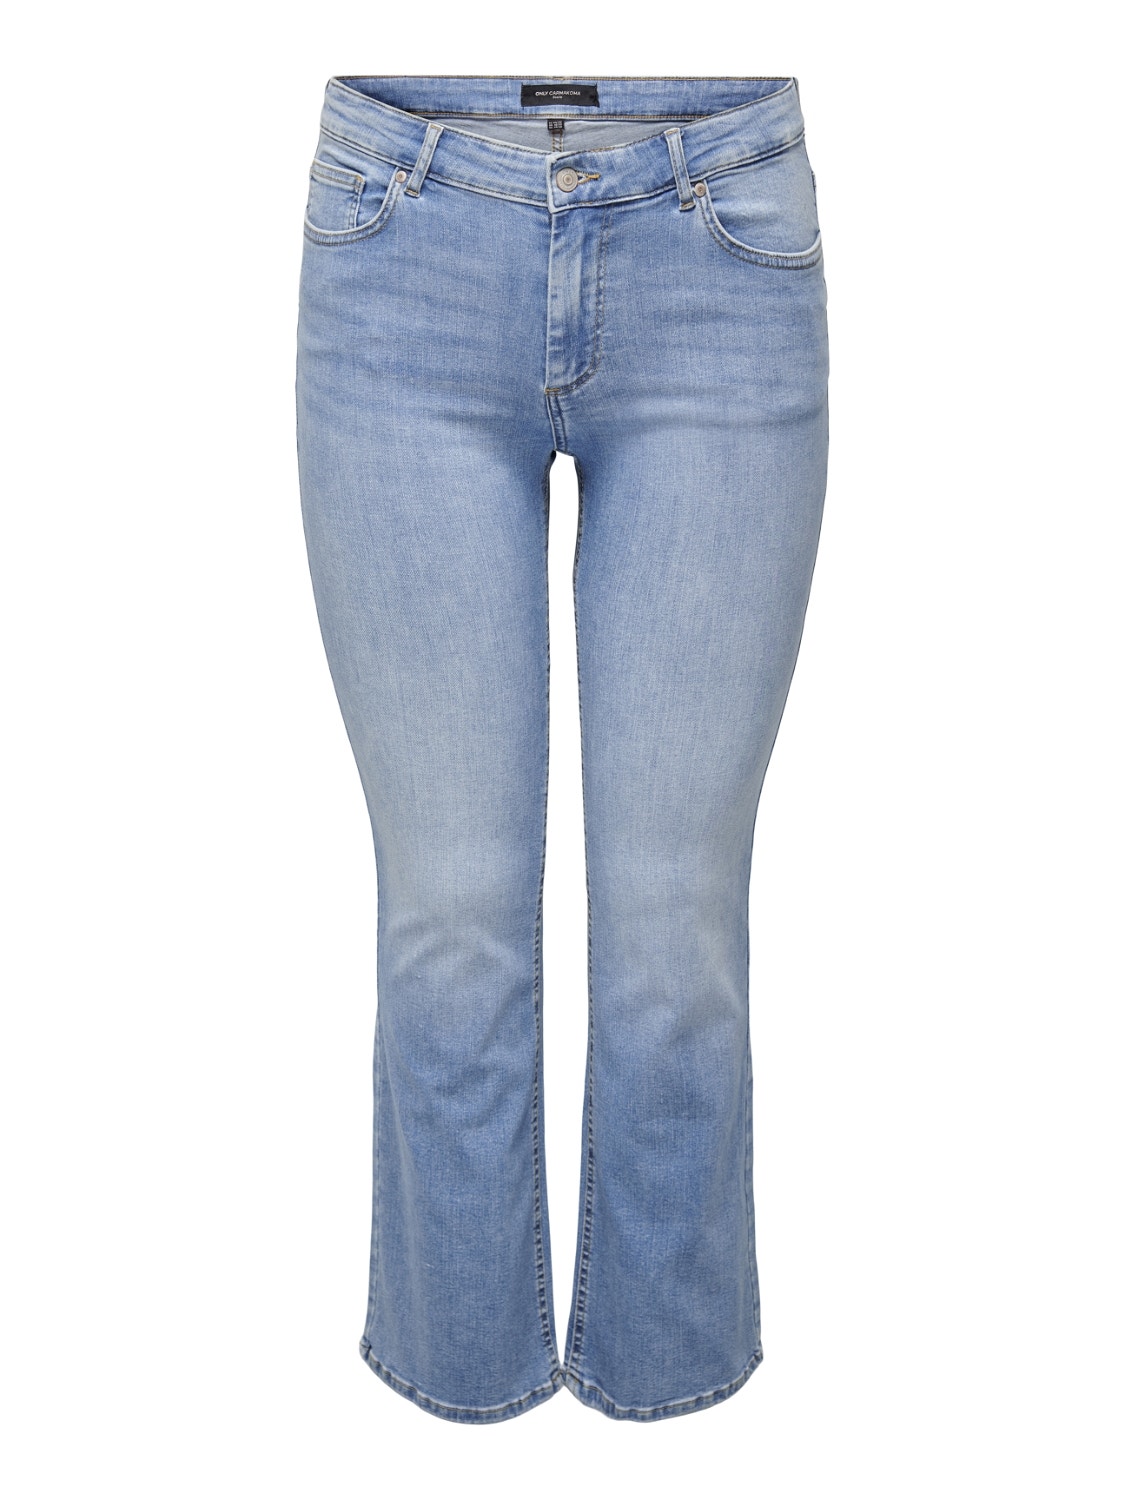 ONLY Ausgestellt Mittlere Taille Curve Jeans -Light Blue Denim - 15260394